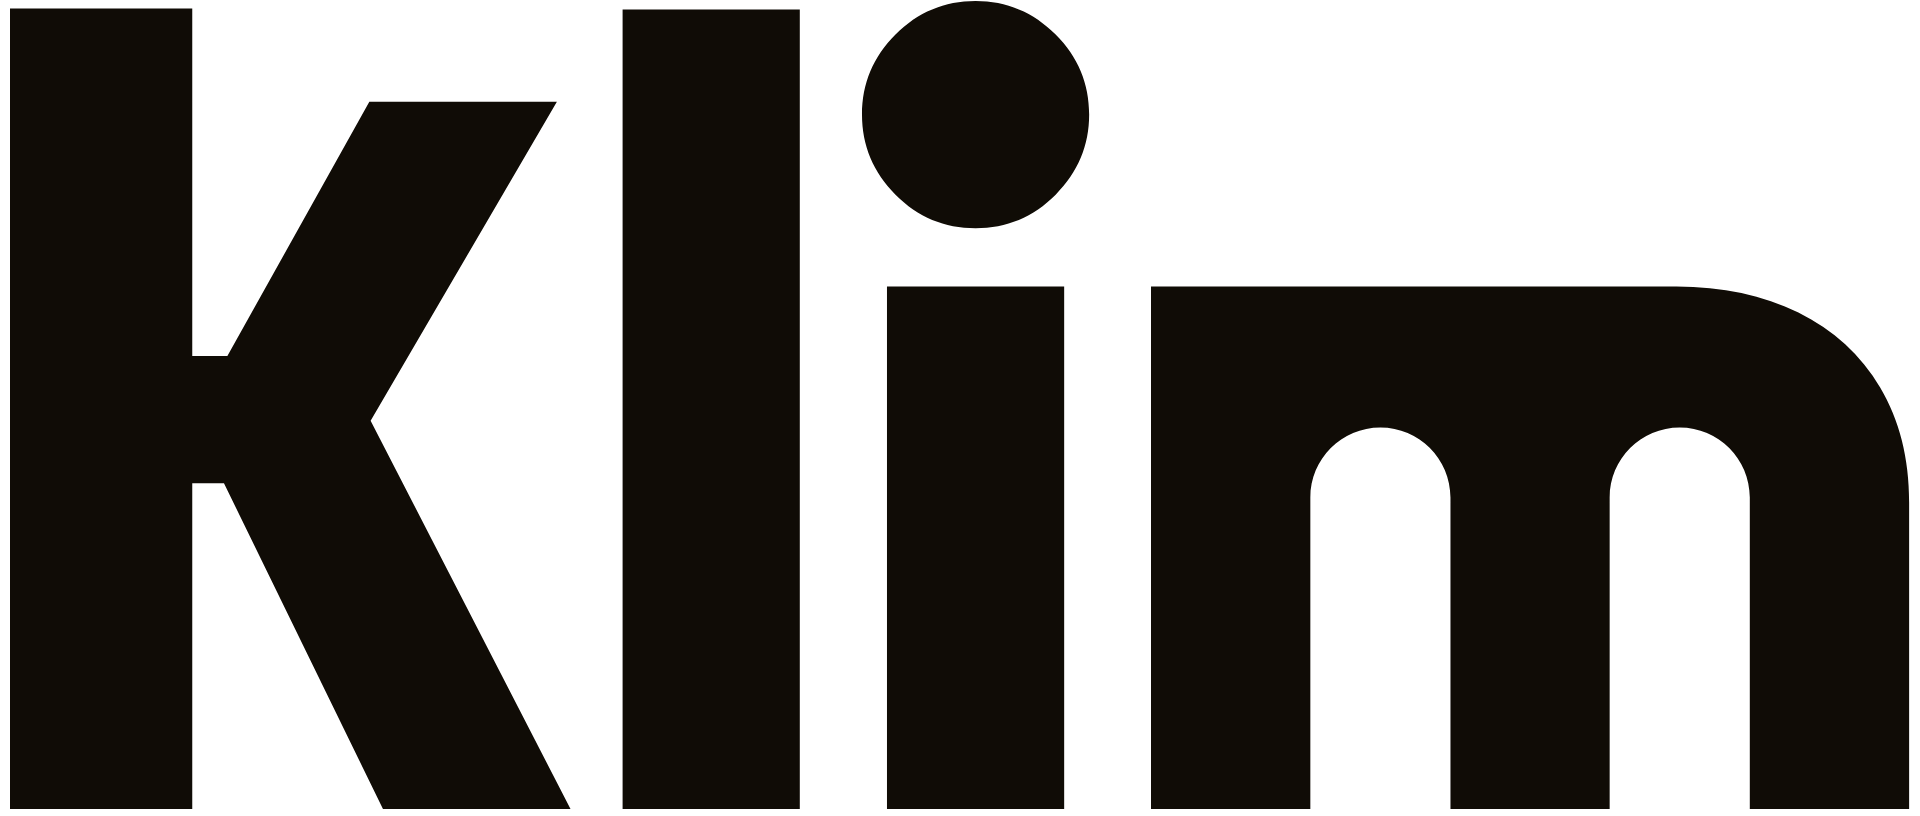 Logo Klim